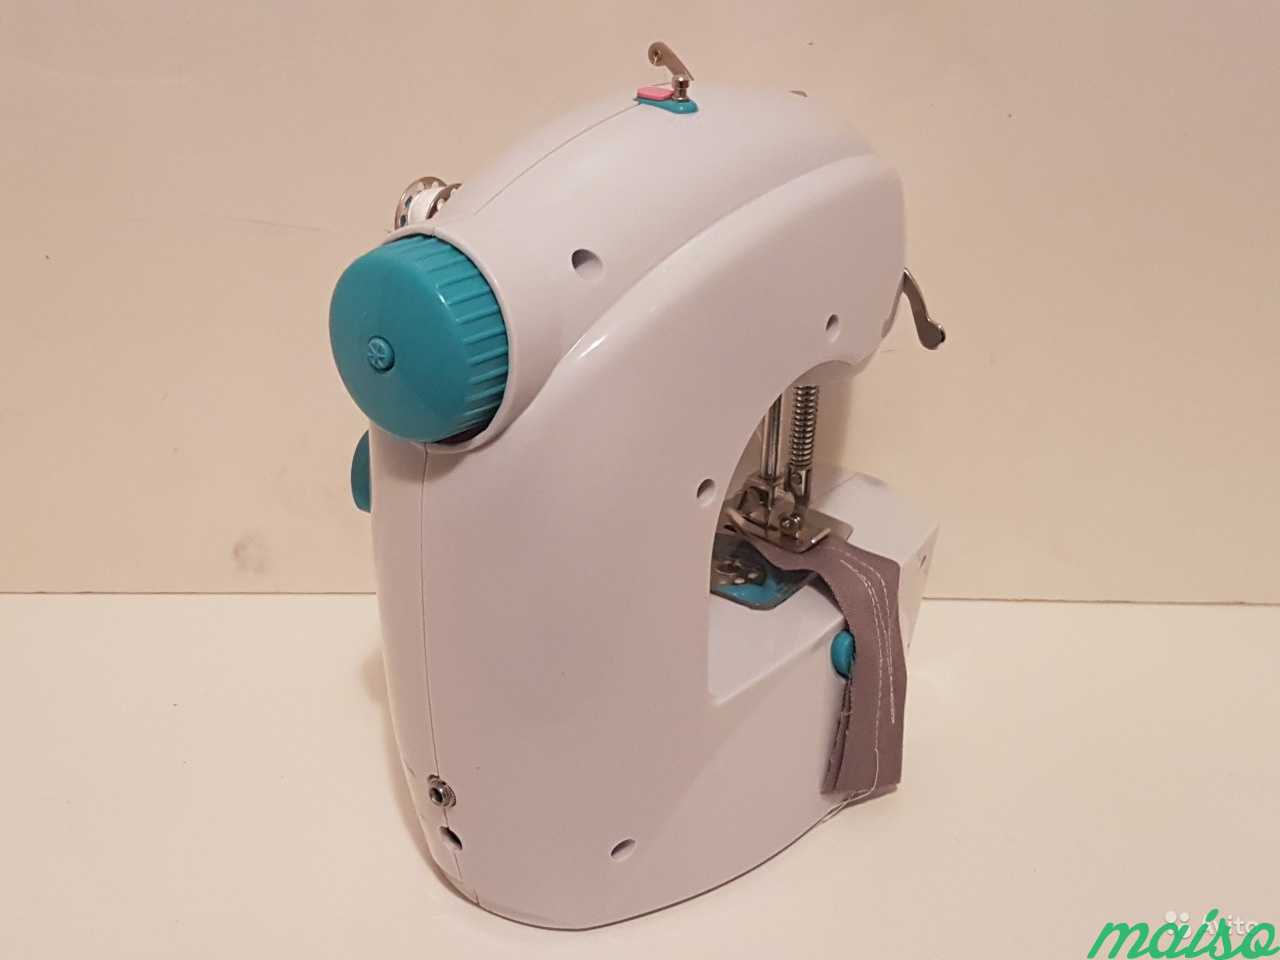 Easy Stitch швейная машинка. Швейная машина EASYSTICH v1981. Швейная машинка easy Stitch отзывы. Швейная машинка easy Stitch купить. Машинка easy